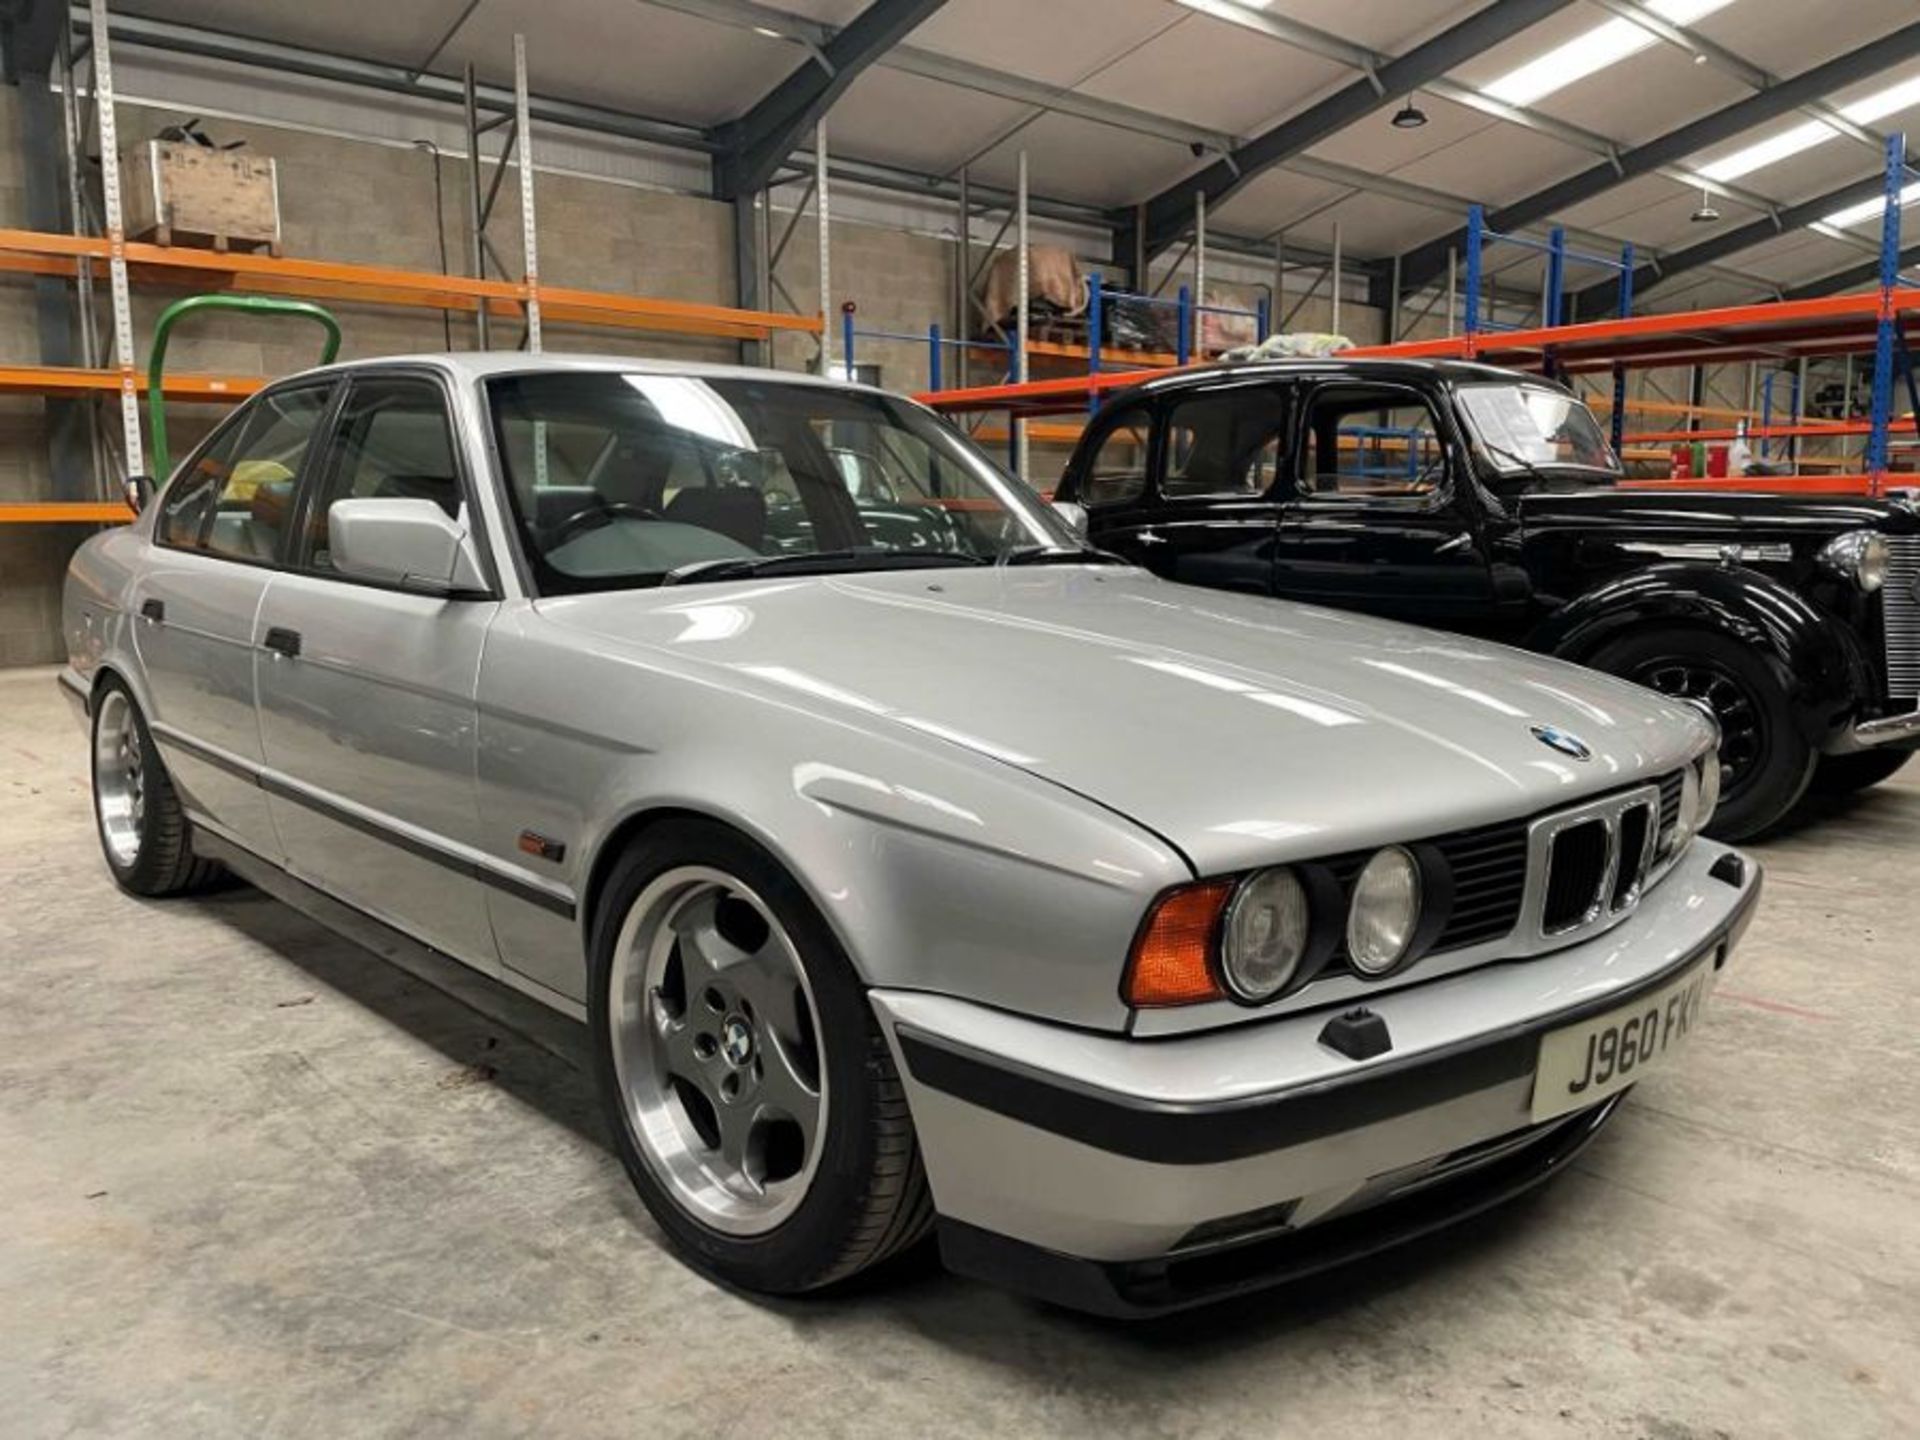 1991 BMW M5 E34 3.6 litre 4 door saloon - Image 2 of 59